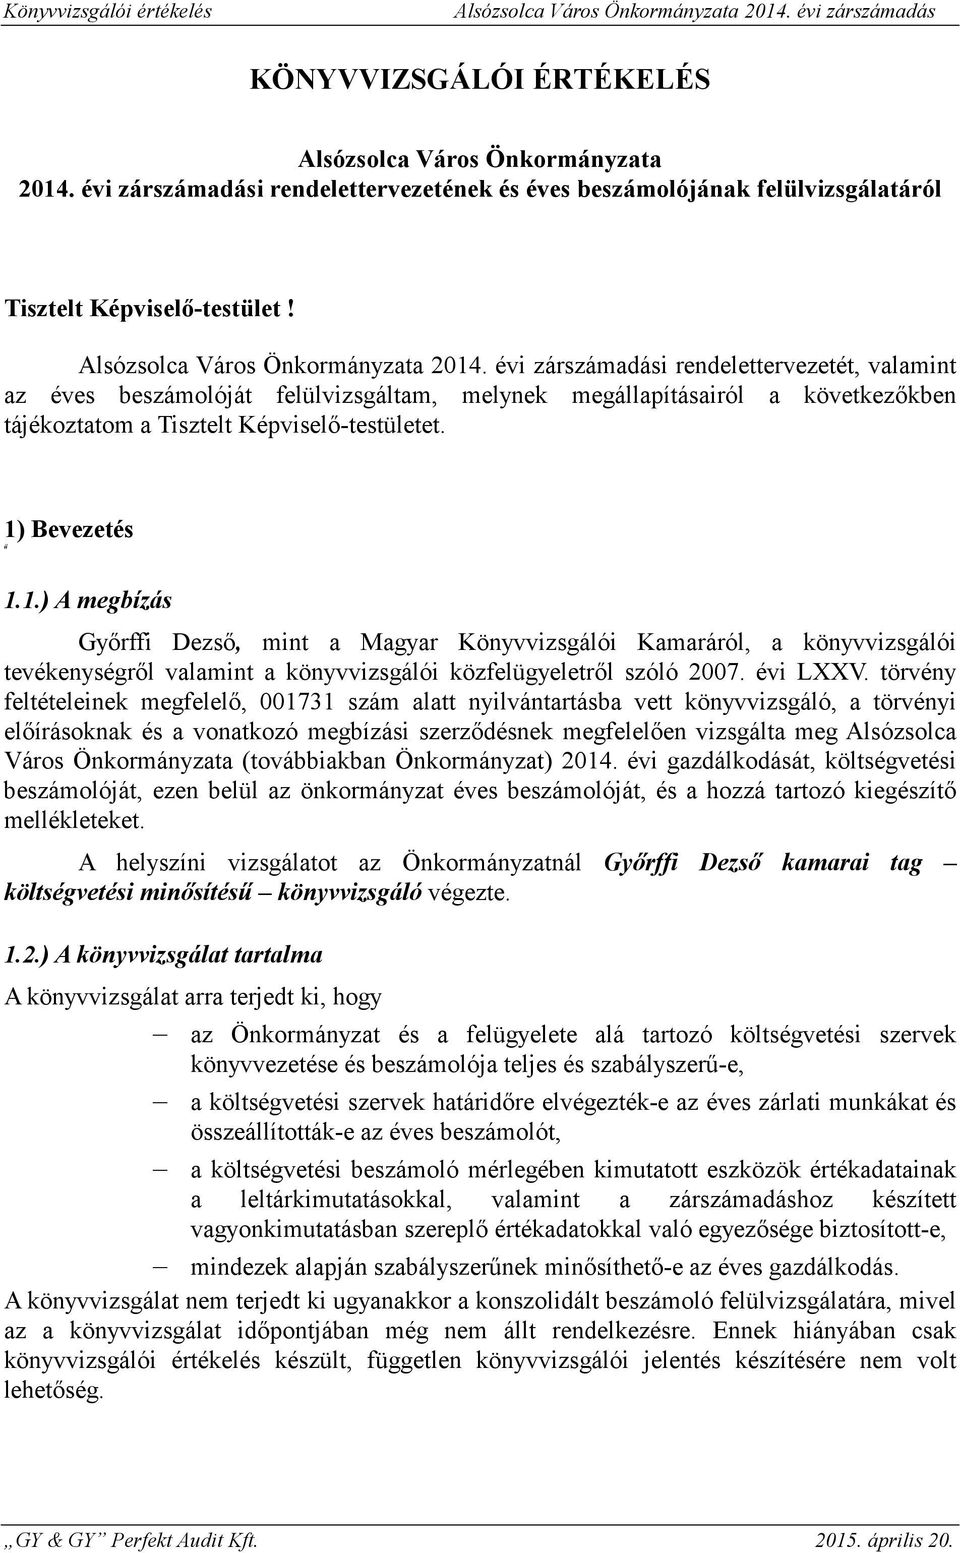 Bevezetés 1.1.) A megbízás Gyrffi Dezs, mint a Magyar Könyvvizsgálói Kamaráról, a könyvvizsgálói tevékenységrl valamint a könyvvizsgálói közfelügyeletrl szóló 2007. évi LXXV.